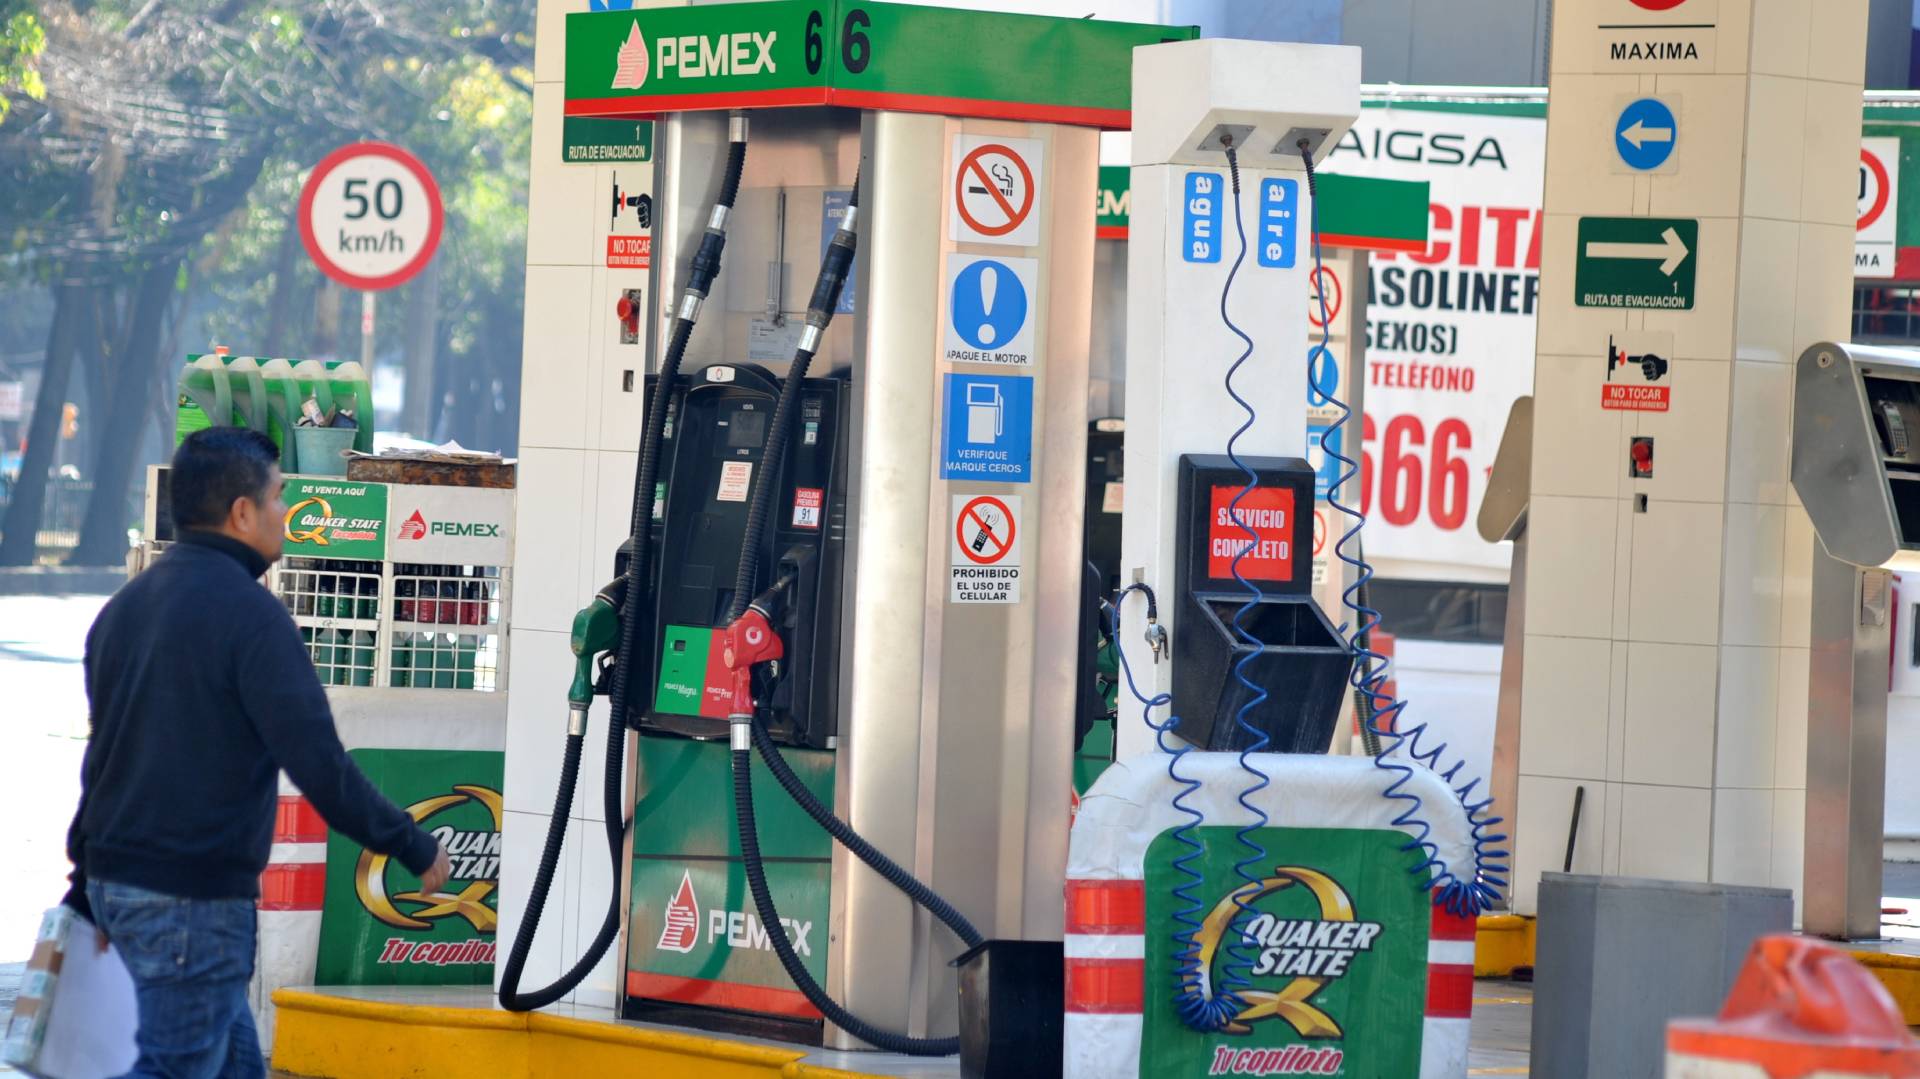 Se buscan evitar gasolinazos (Foto: Armando Monroy/Cuartoscuro.com)